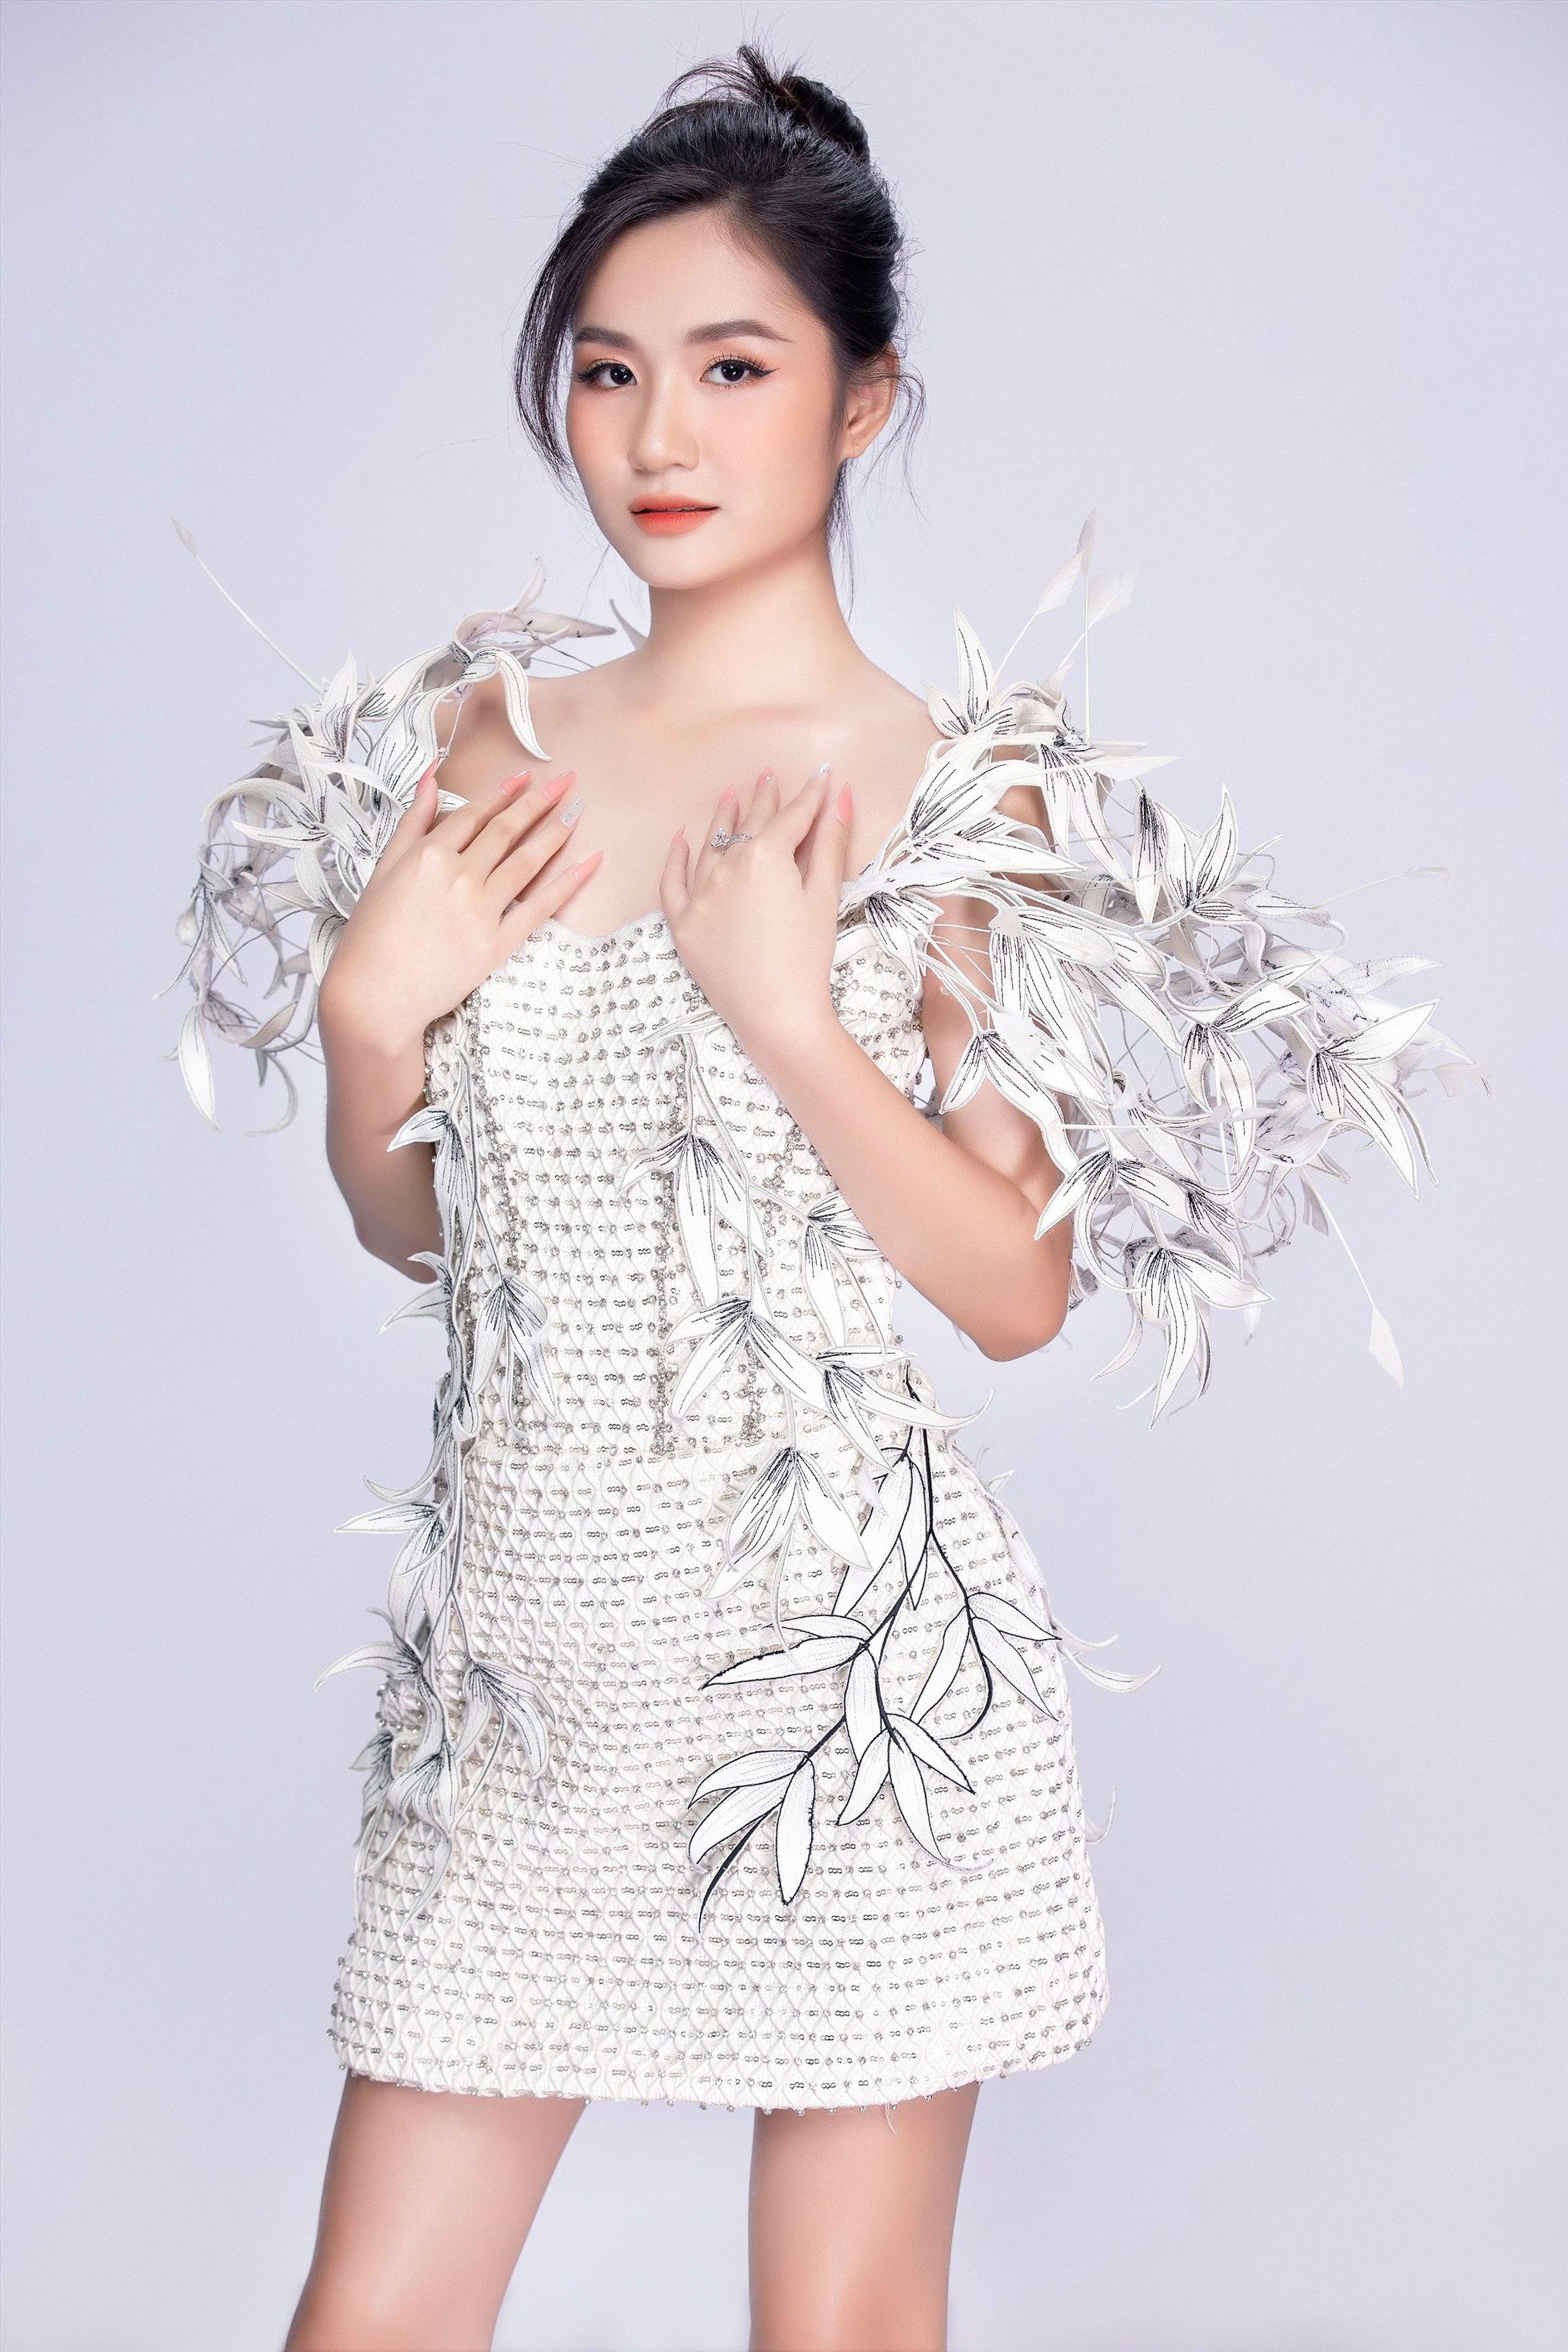 Xuất hiện trong những thiết kế với 2 gam đen - trắng của NTK Ivan Trần, hoa hậu Nguyễn Thanh Hà vẫn toát lên vẻ kiêu sa. Ảnh: NVCC.